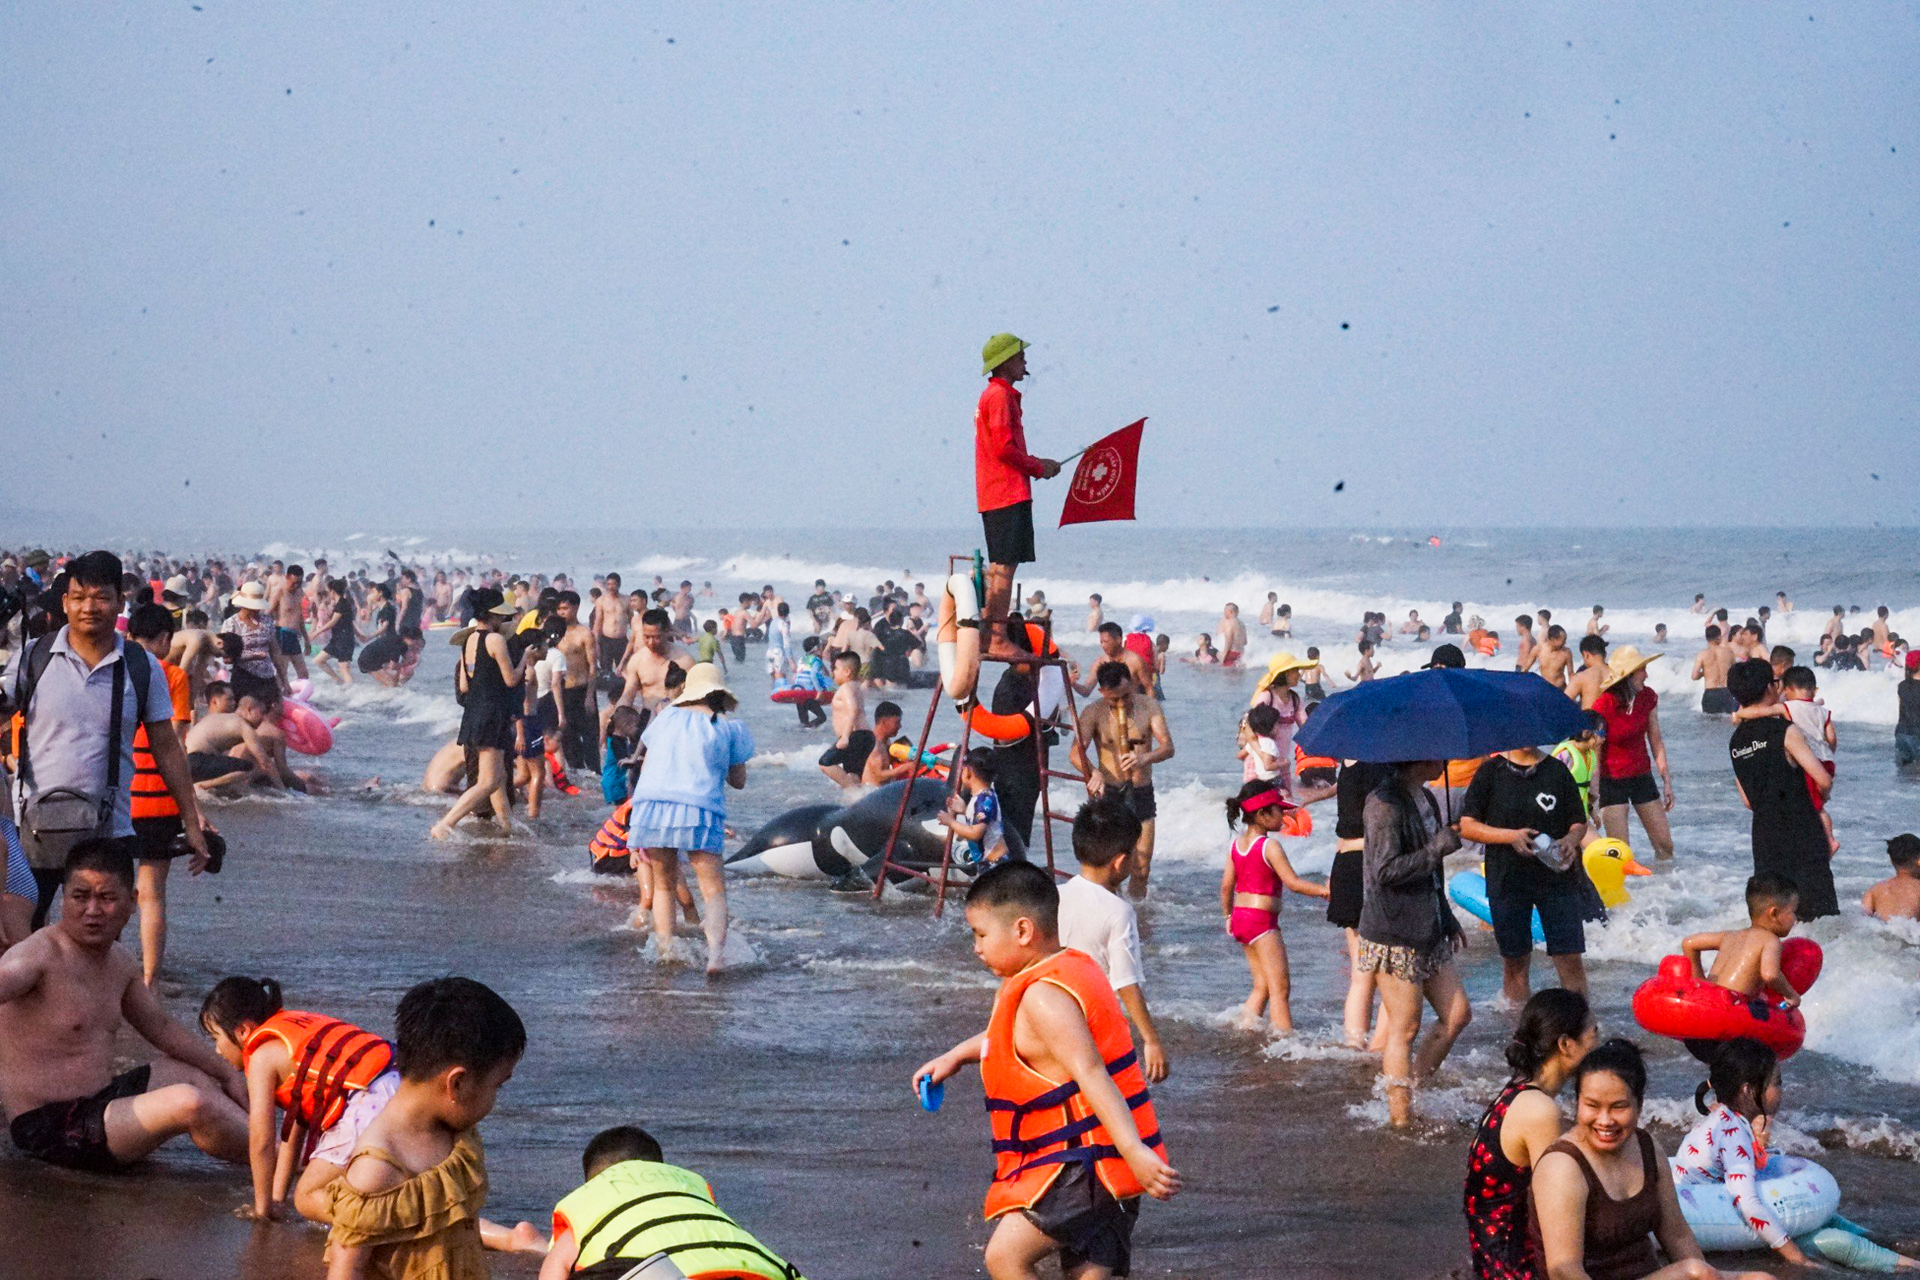 Vạn người đổ về bãi biển Sầm Sơn trong ngày nắng nóng đỉnh điểm - 11